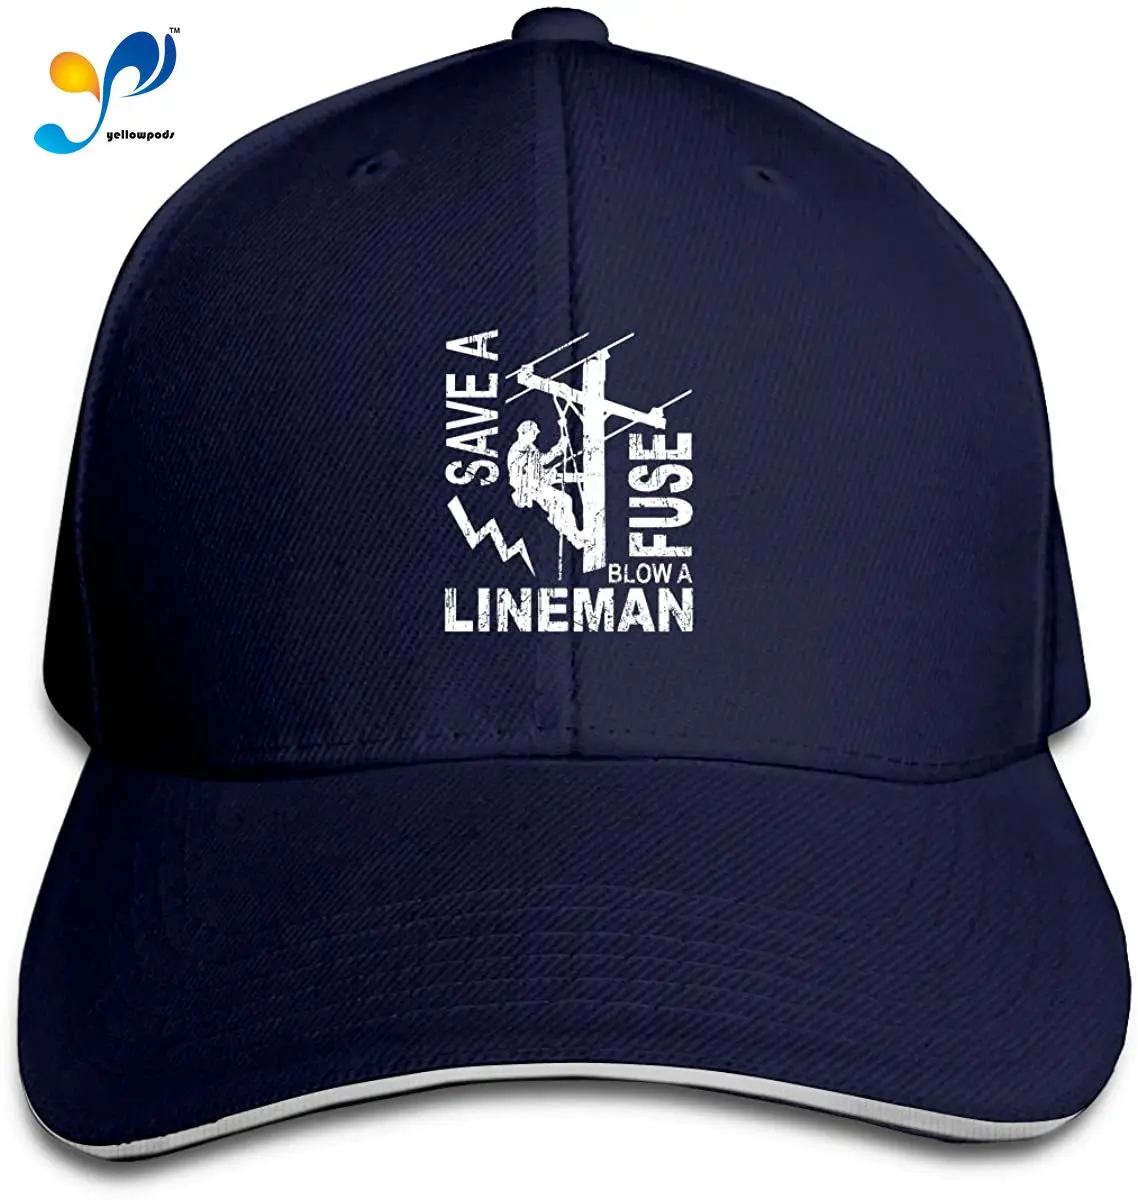 

Lineman Save A Fuse - Blow A Lineman - Linemen Men's Women's Classical Hat Fashionable Peak Cap Hunting Cap